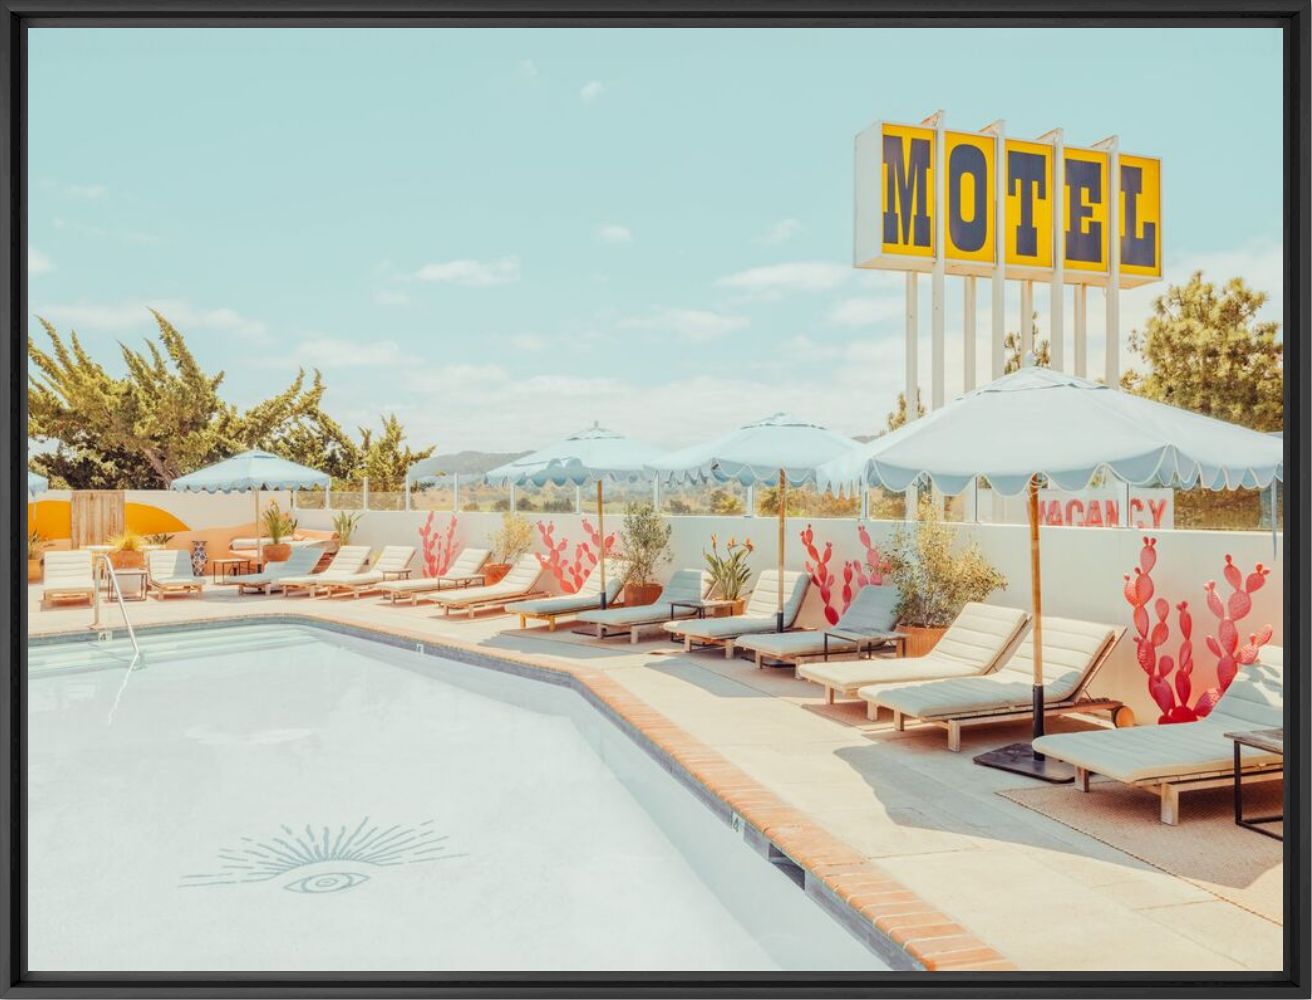 Fotografia The Californian coast motel - LUDWIG FAVRE - Pittura di immagini